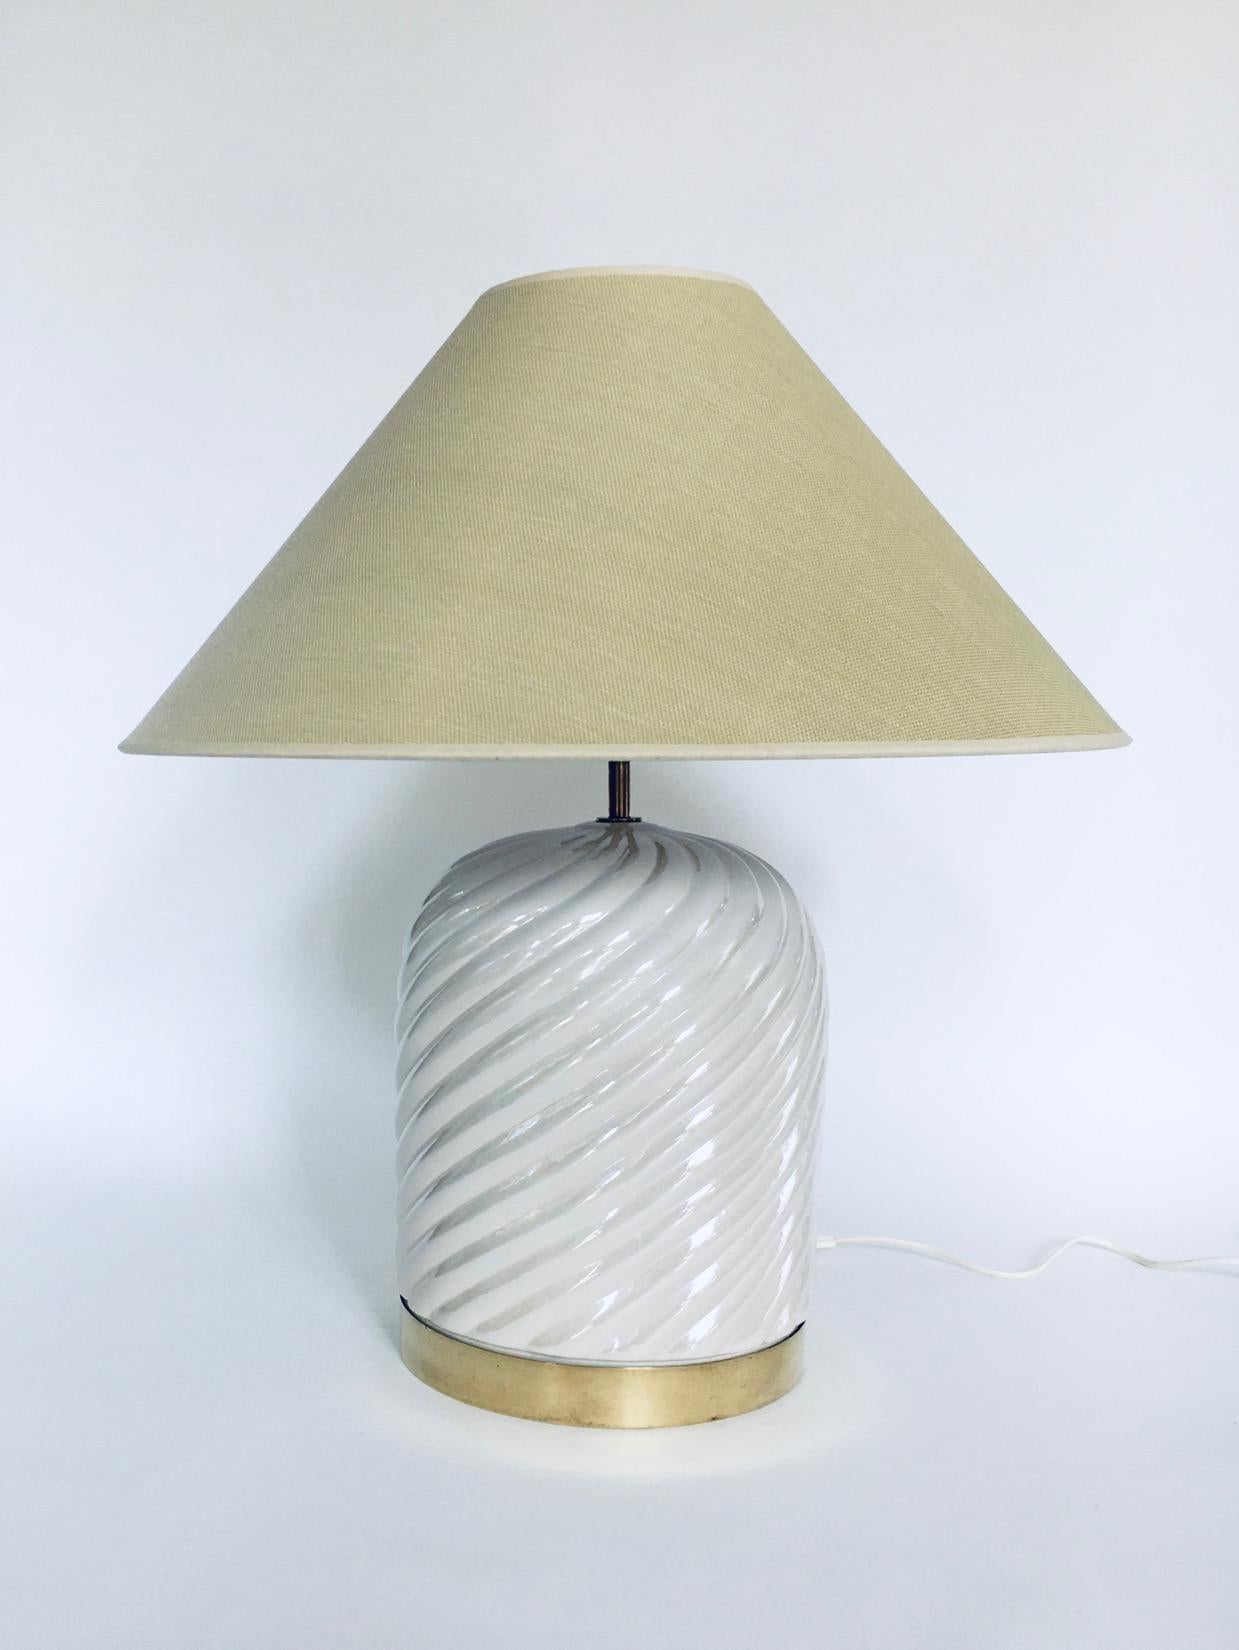 Vintage Postmodern Hollywood Regency Style Italian Design Table Lamp Set by Tommaso Barbi, made in Italy 1970's. Ceramichi, Base en céramique avec garniture en laiton. Ensemble de 2 lampes de table ou d'appoint avec des abat-jour neufs. Base de